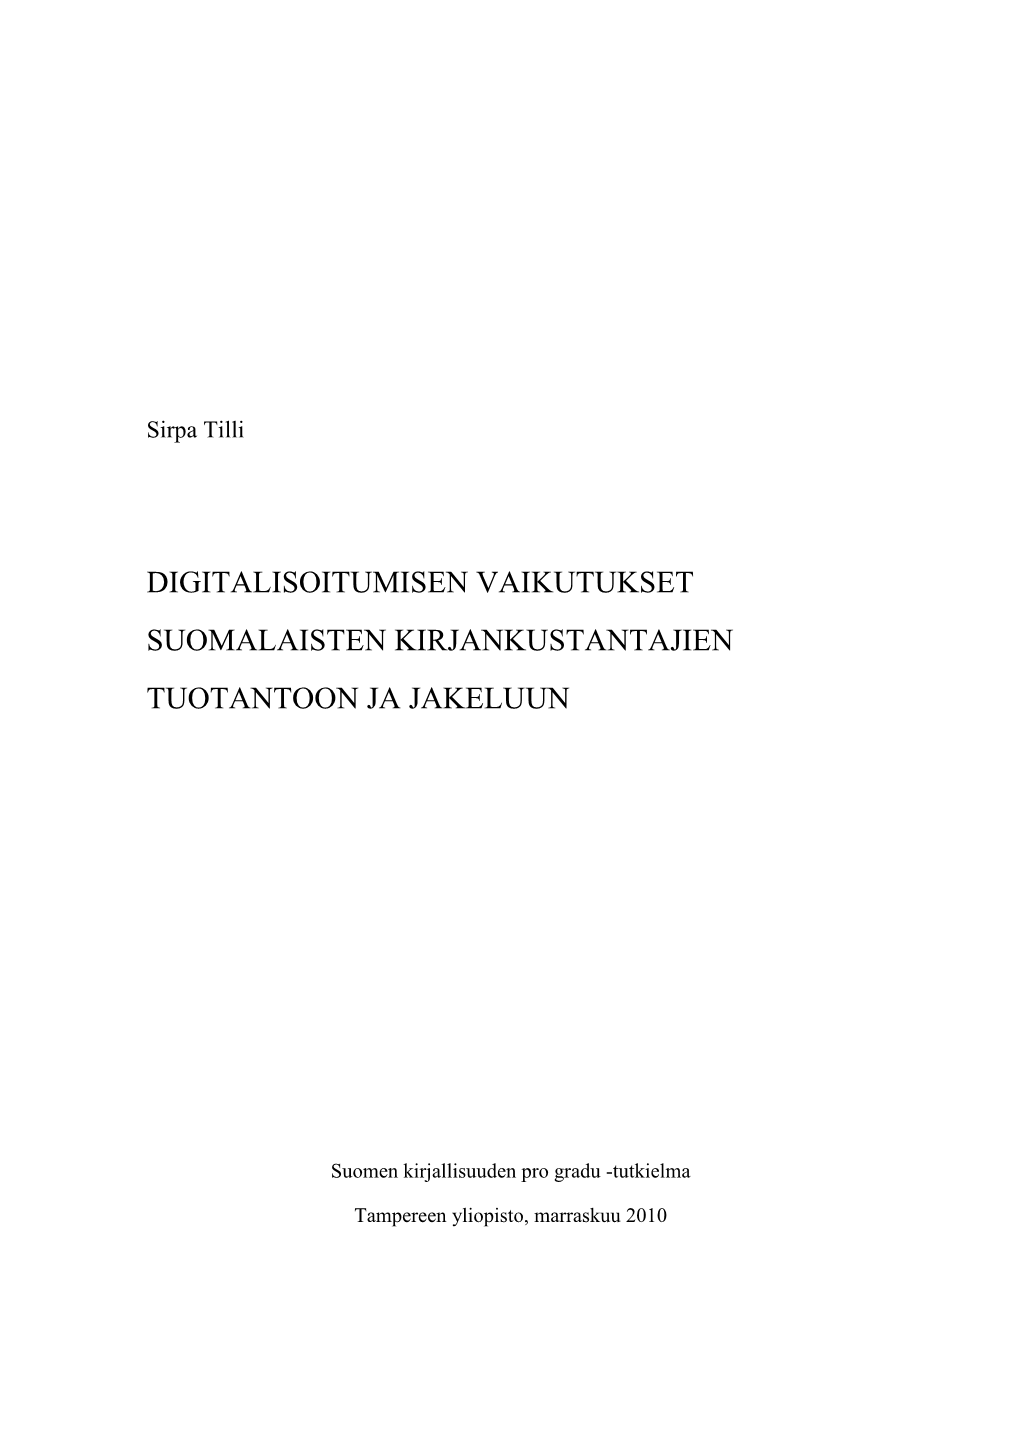 Digitalisoitumisen Vaikutukset Suomalaisten Kirjankustantajien Tuotantoon Ja Jakeluun